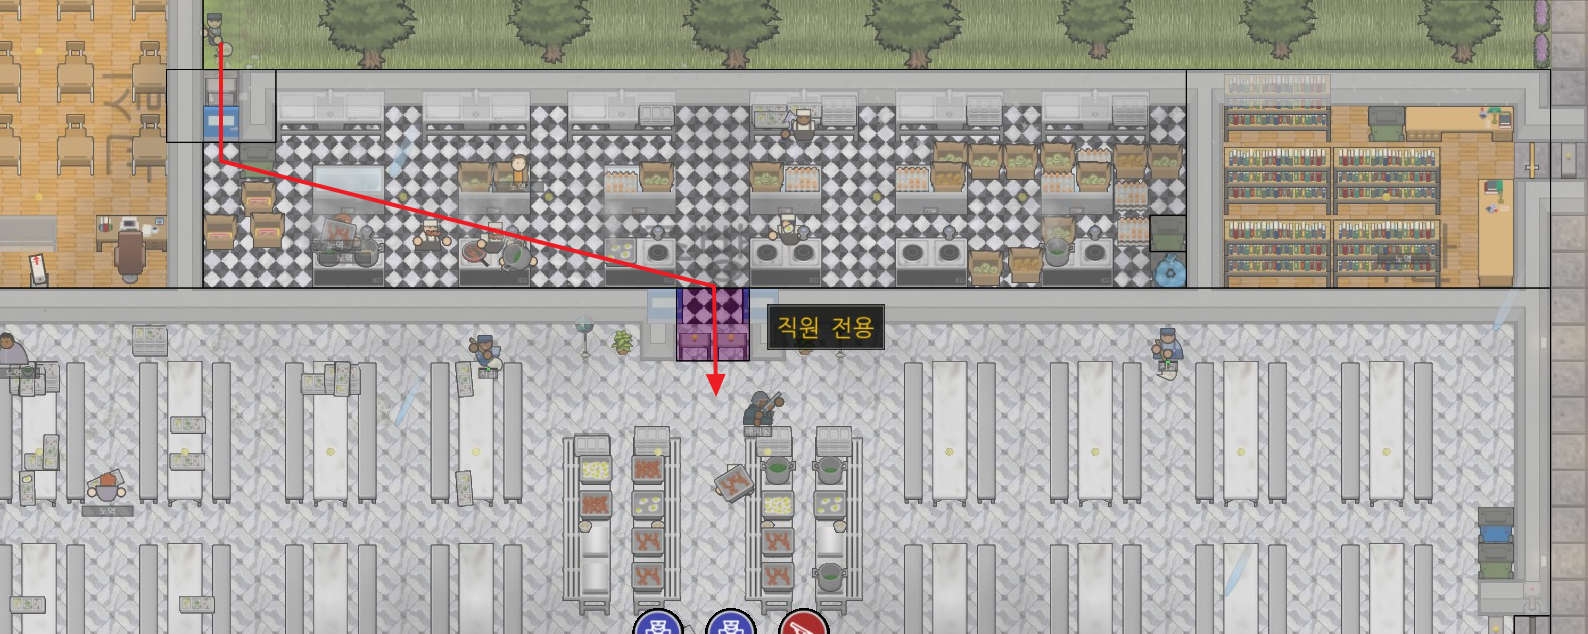 Prison Architect(프리즌 아키텍트)&#44; 주방과 식당 사이의 배치